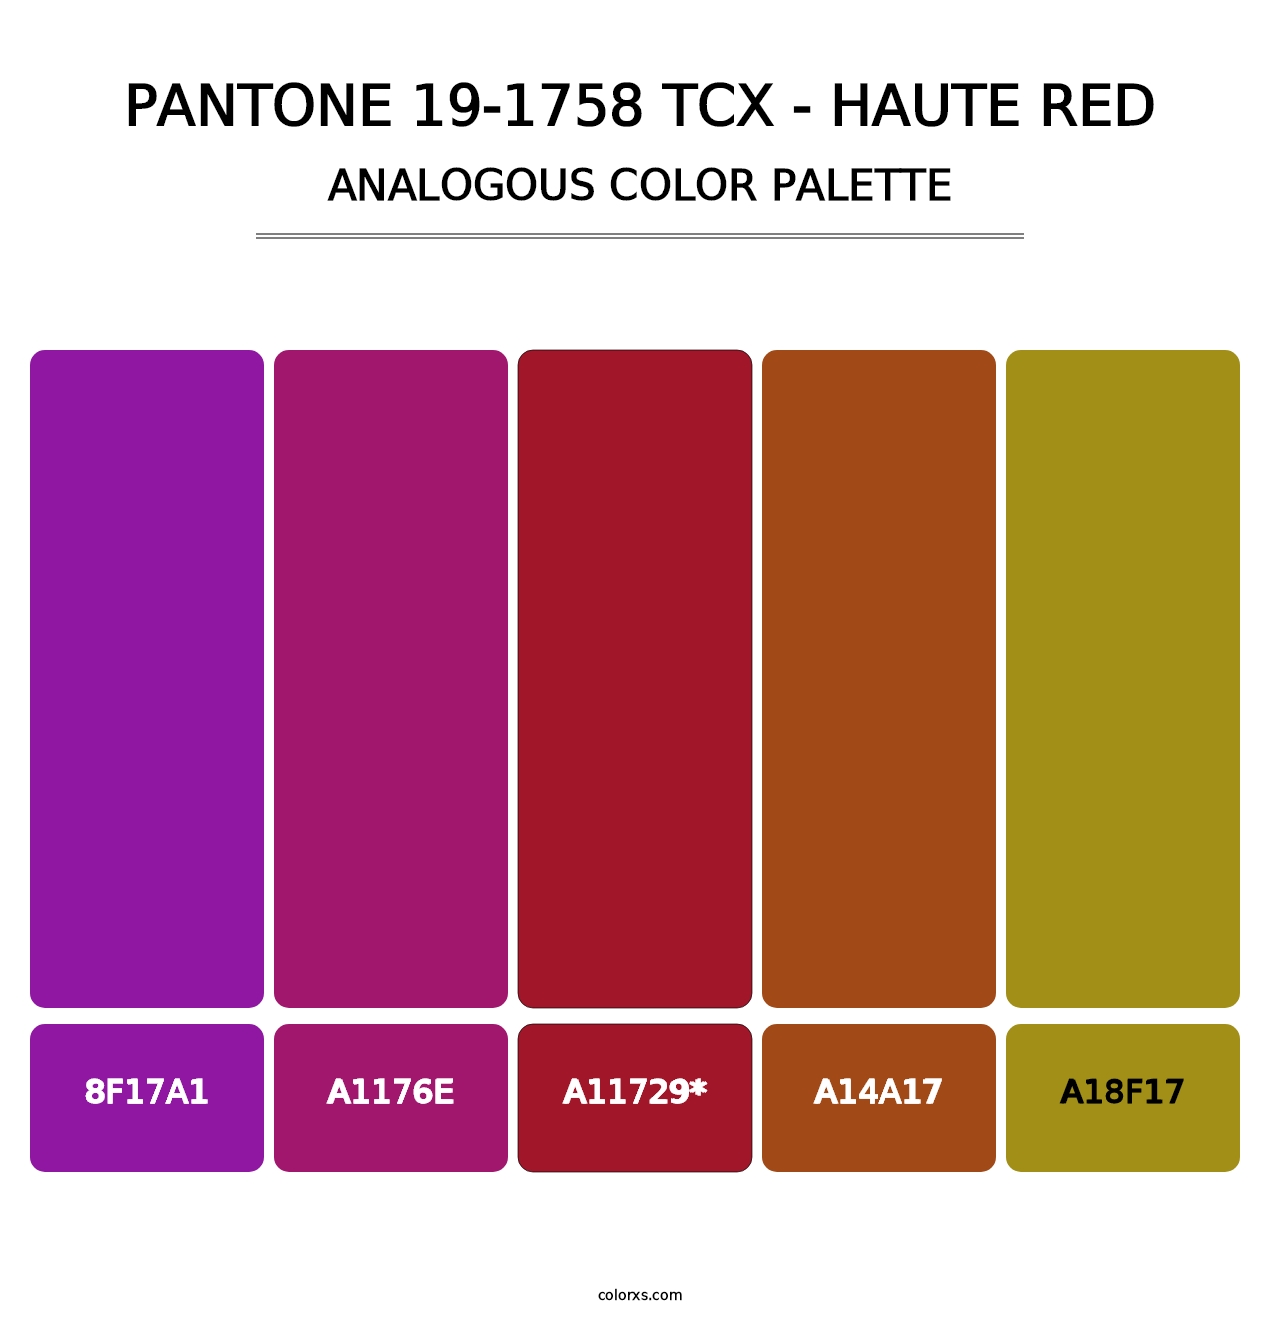 PANTONE 19-1758 TCX - Haute Red - Analogous Color Palette